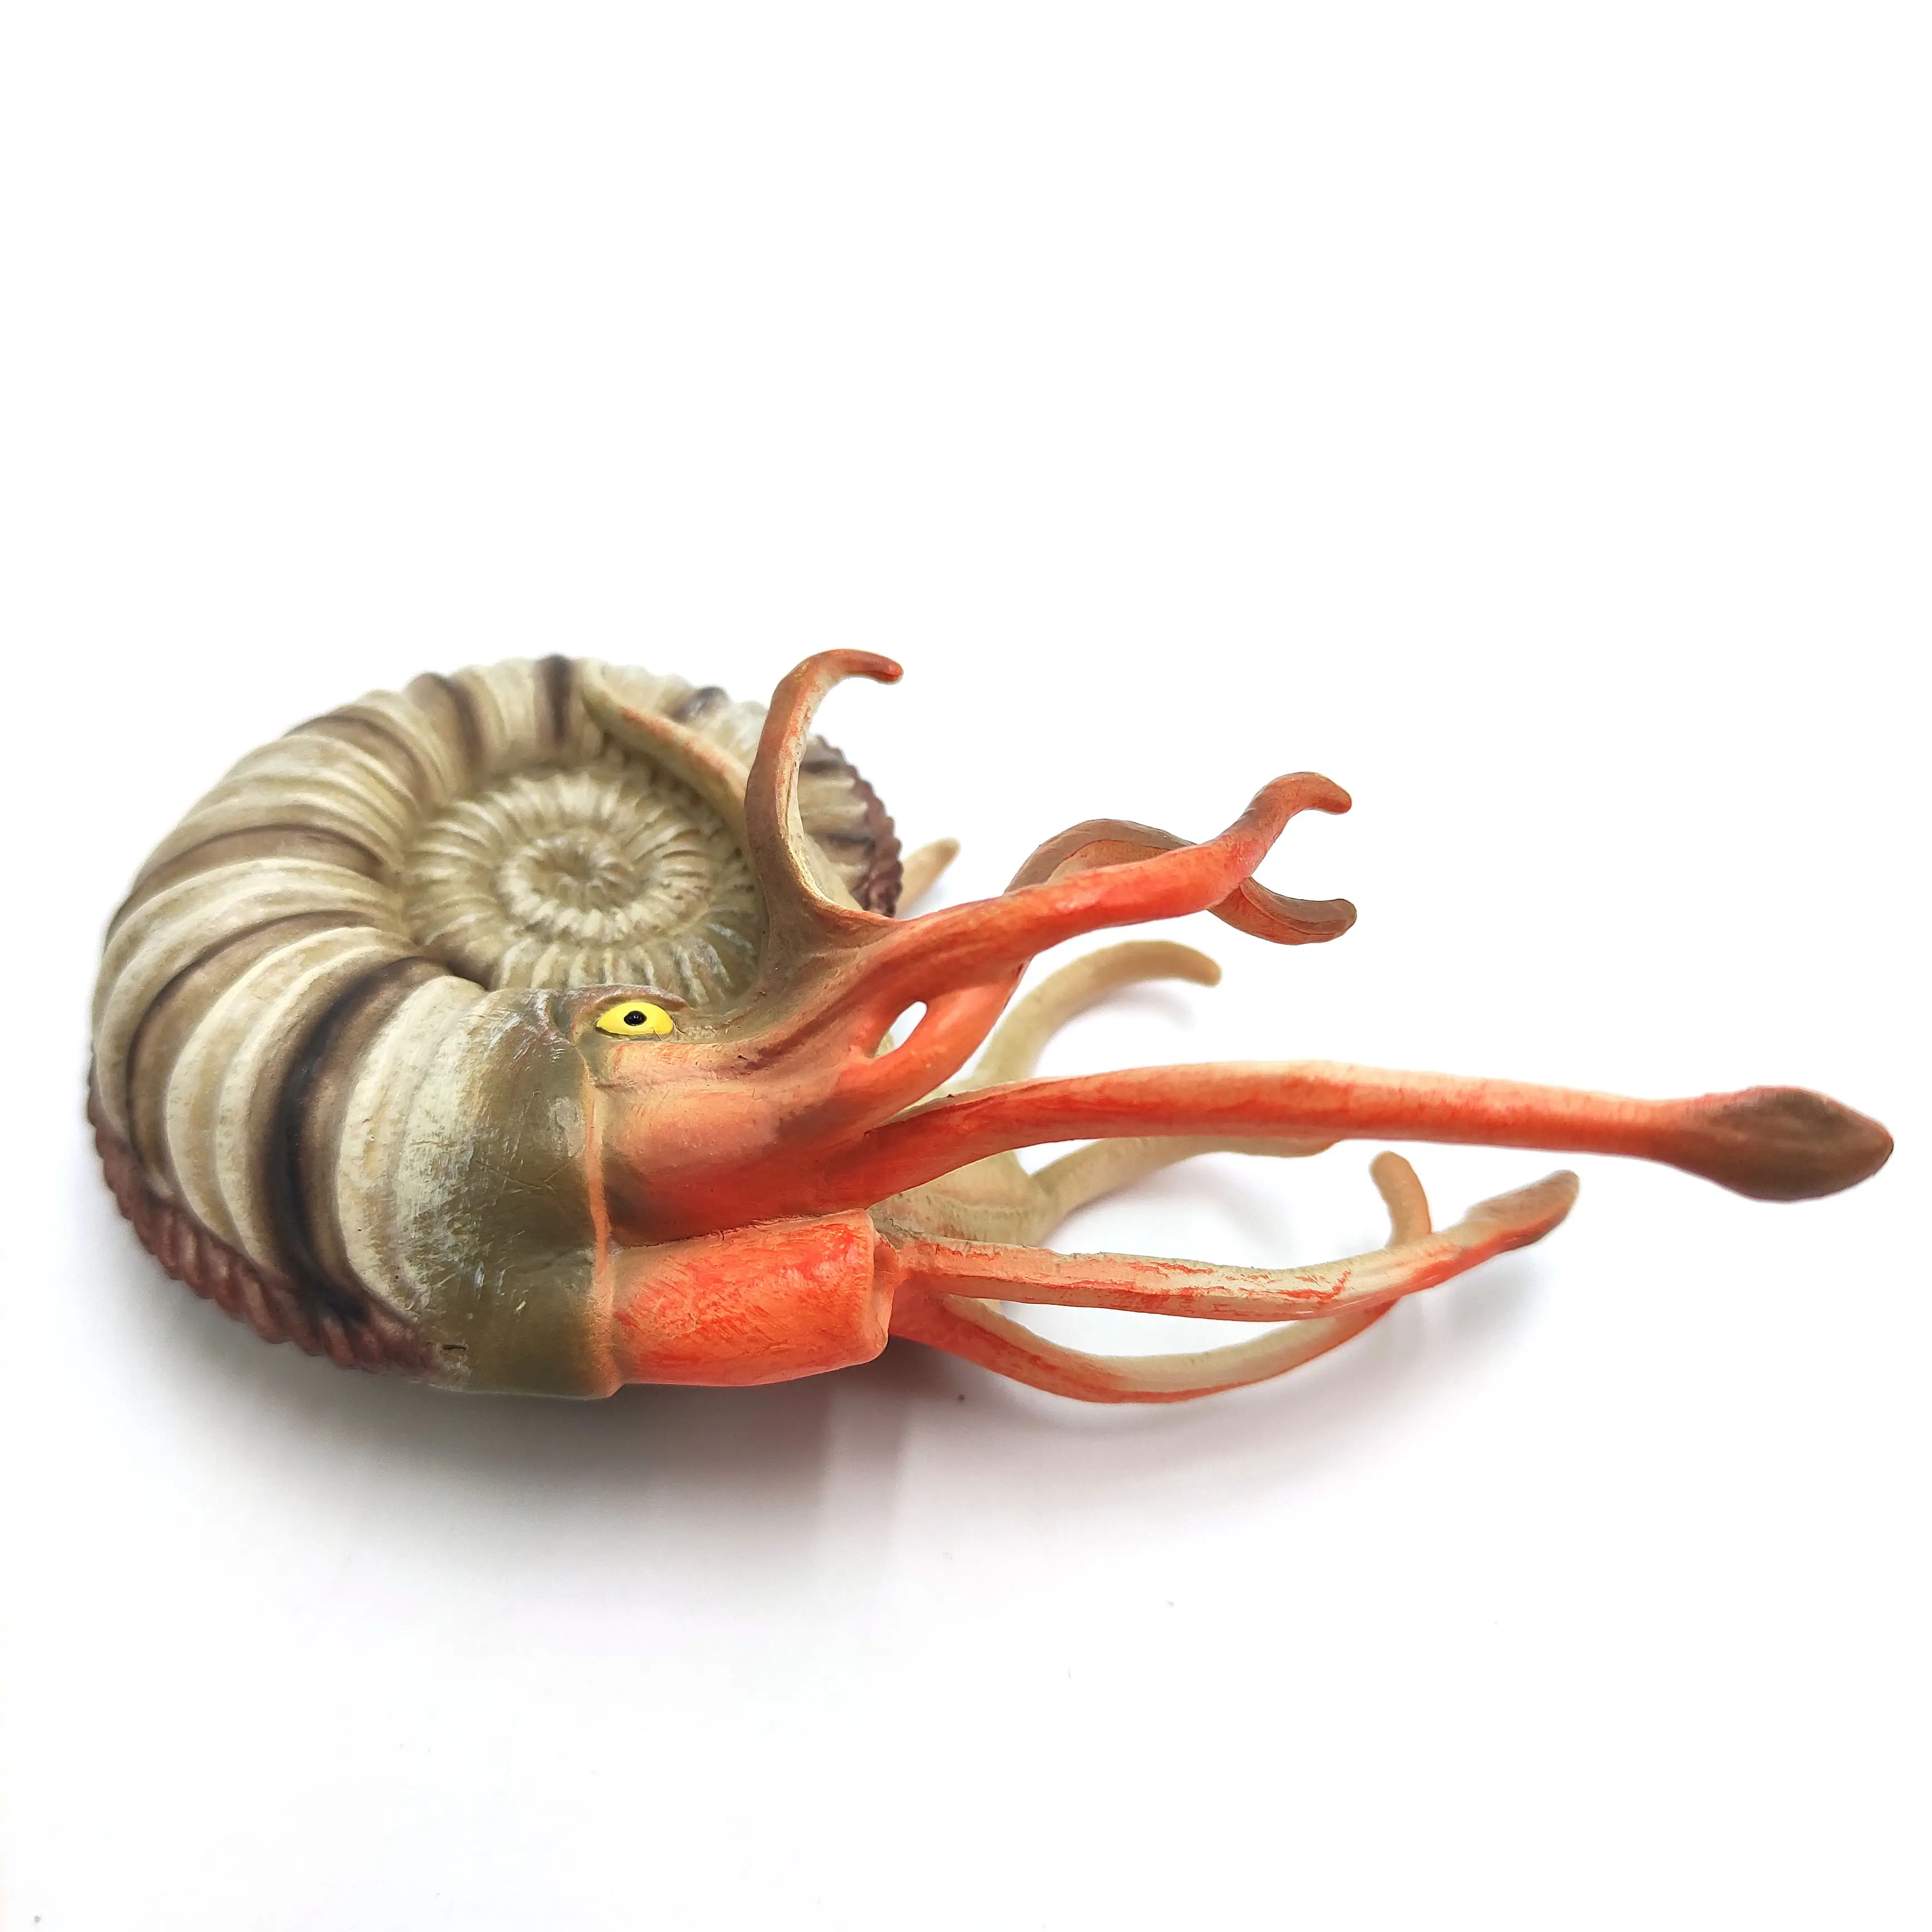 Morefun Solid PVC Simulation Sea Life Model Plastic Animal Toys Marine Figures Ocean Animal Figurines Ammonite